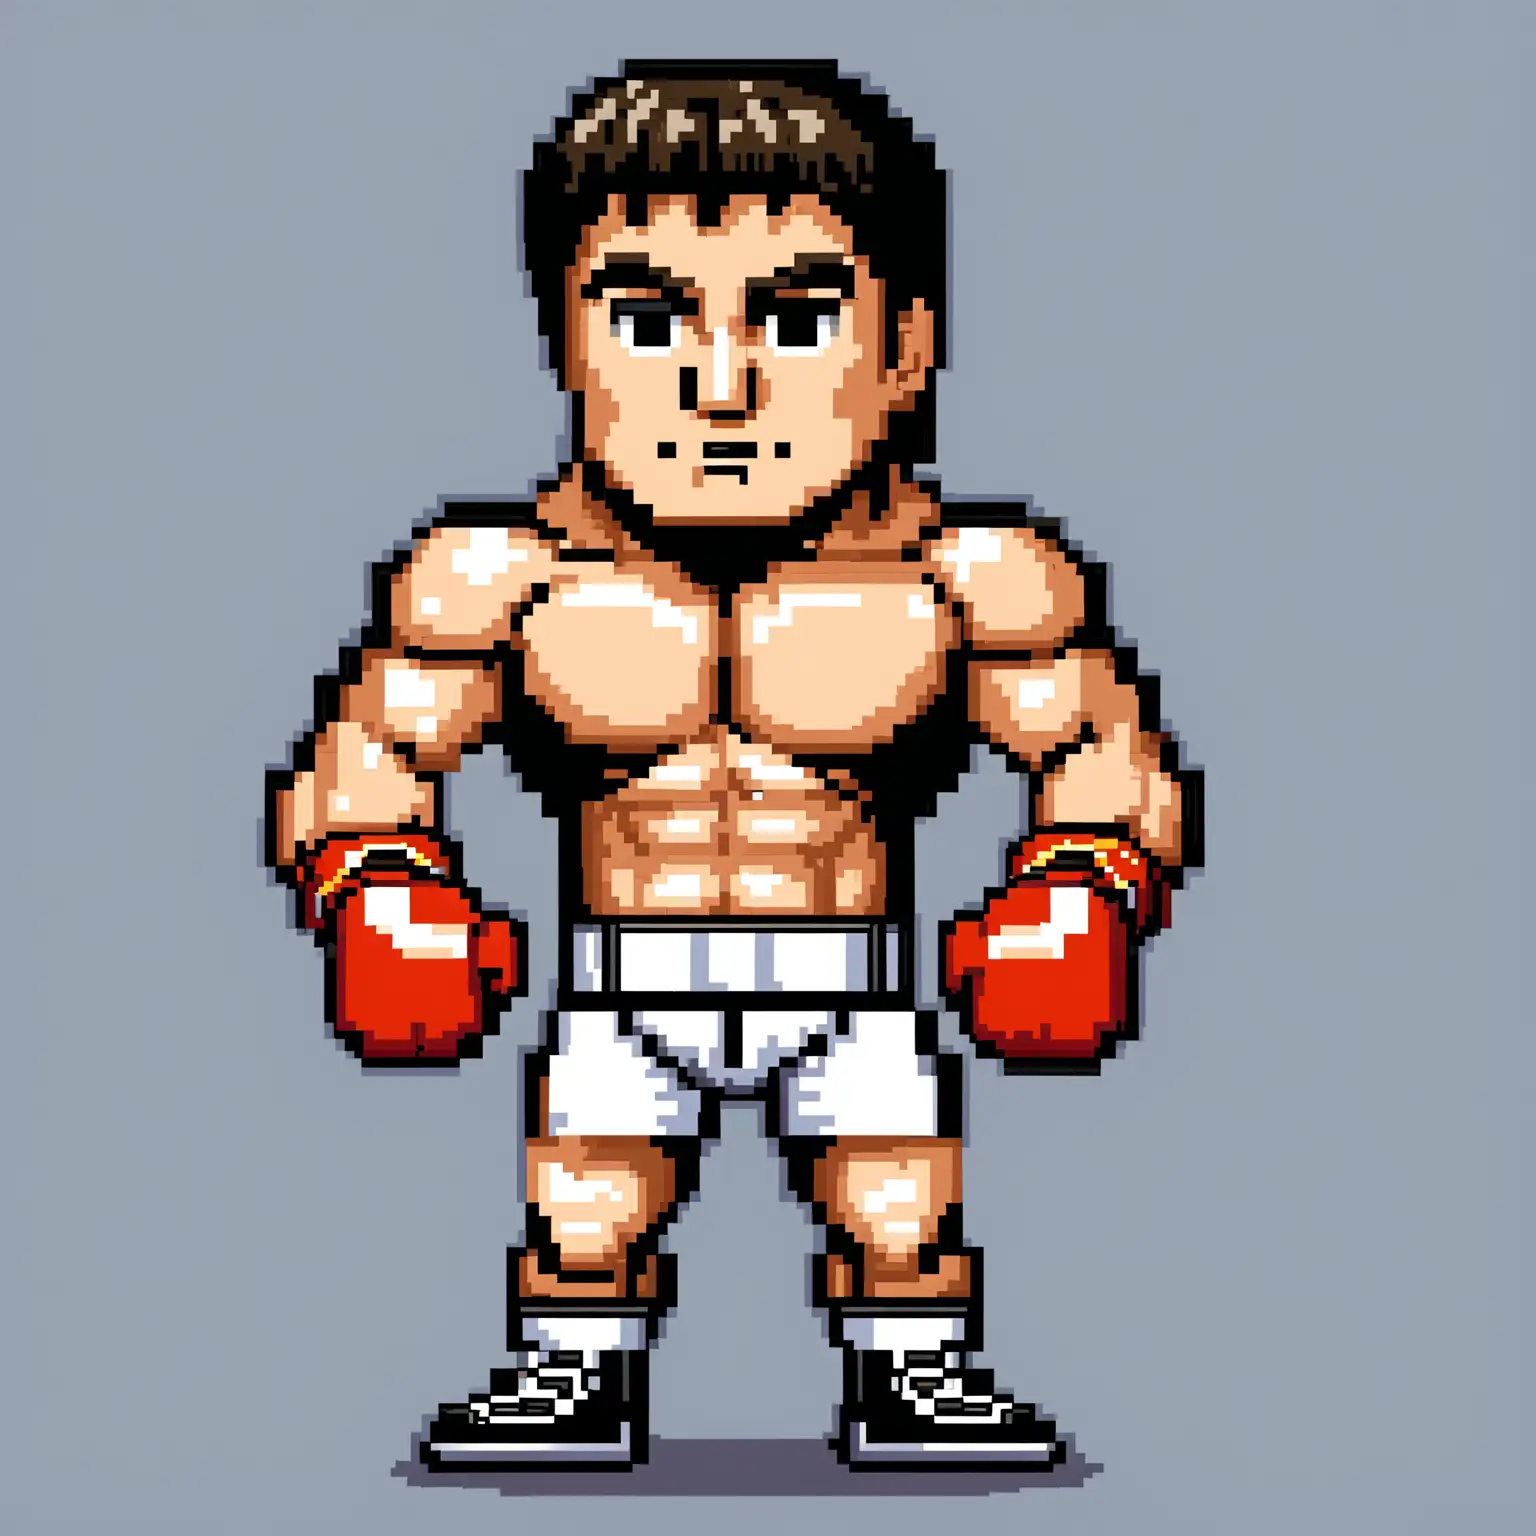 dans un style pixel art de bonne qualité : 
un boxeur qui ressemble à stalon